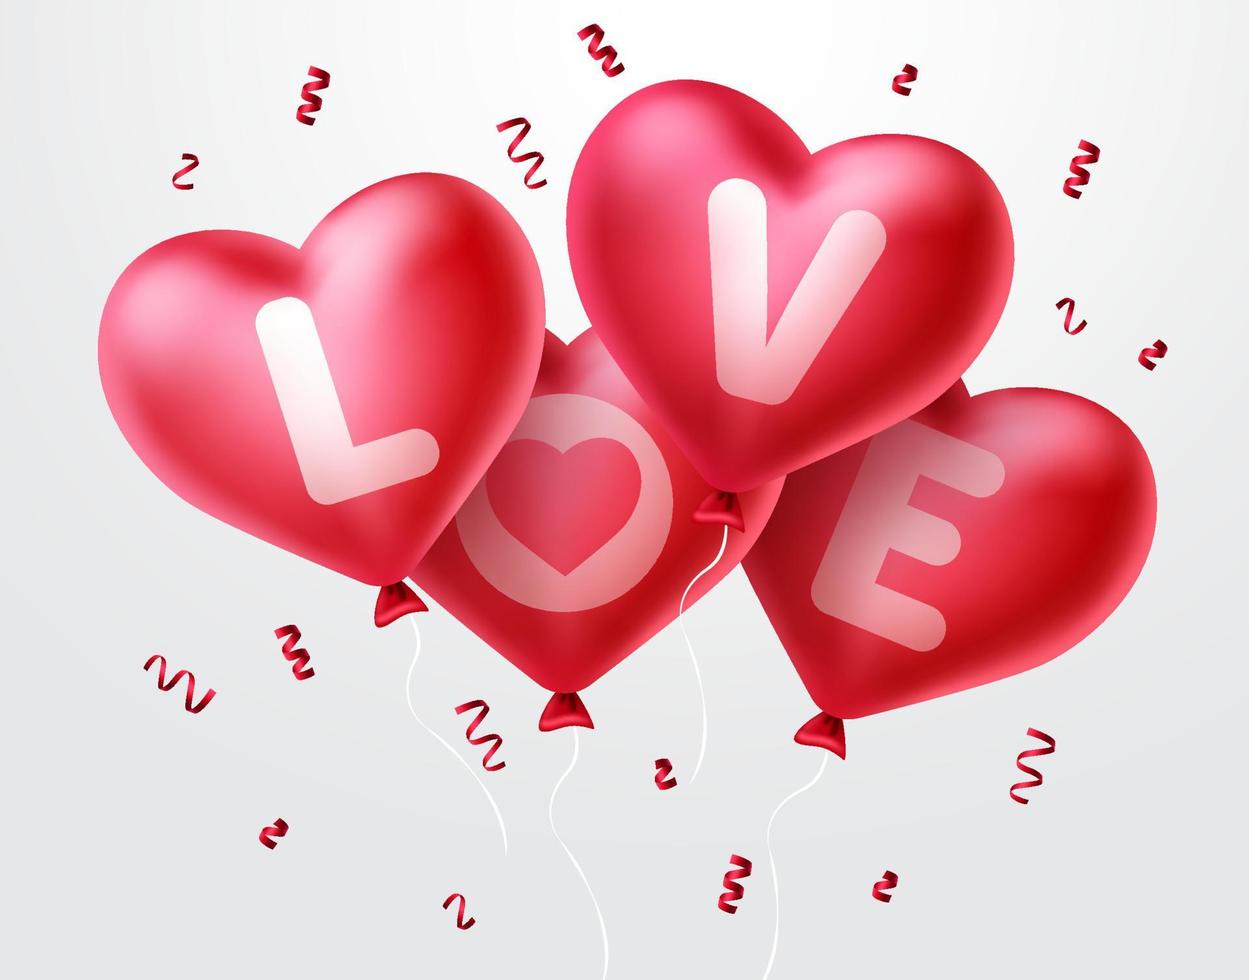 hou van hartballonnen voor valentijnsdag. stelletje rood hart ballonnen vliegen met confetti elementen op witte achtergrond. vectorillustratie. vector